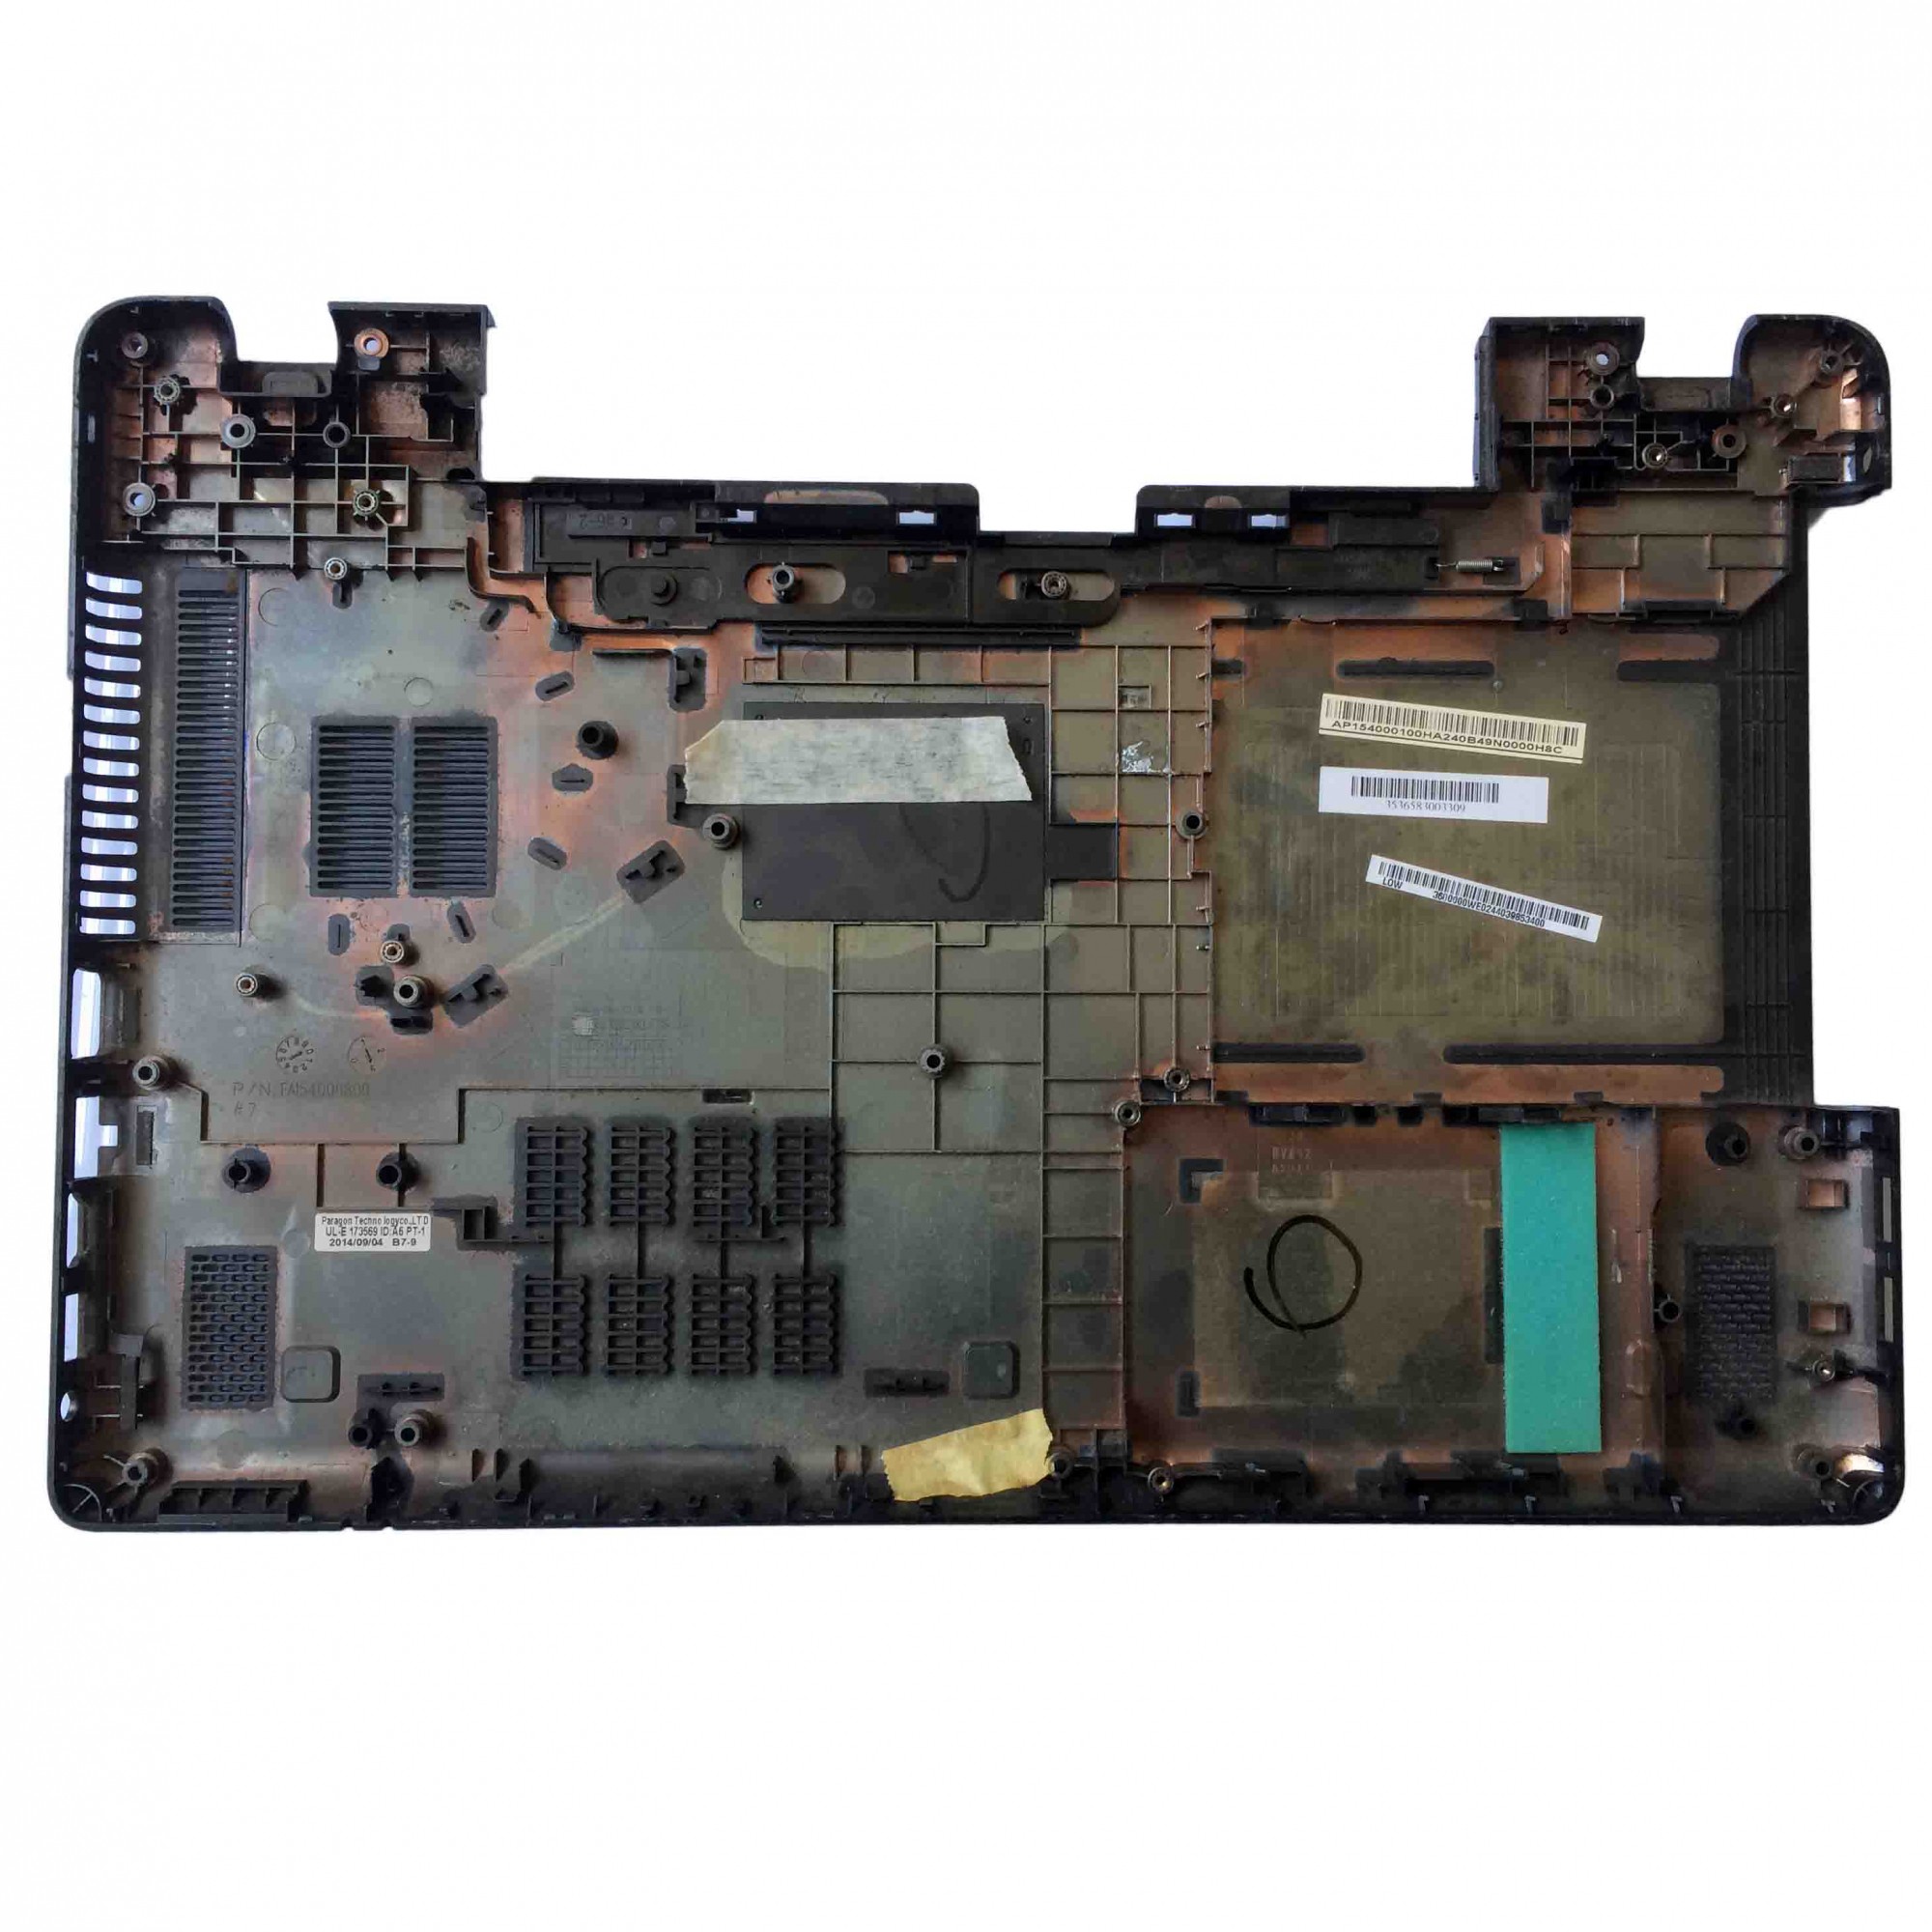 Carcaça Base Inferior Notebook Acer Aspire E5-511 E5-521 E5-571 V3-572 PN:Ap154000o00ha - Retirado